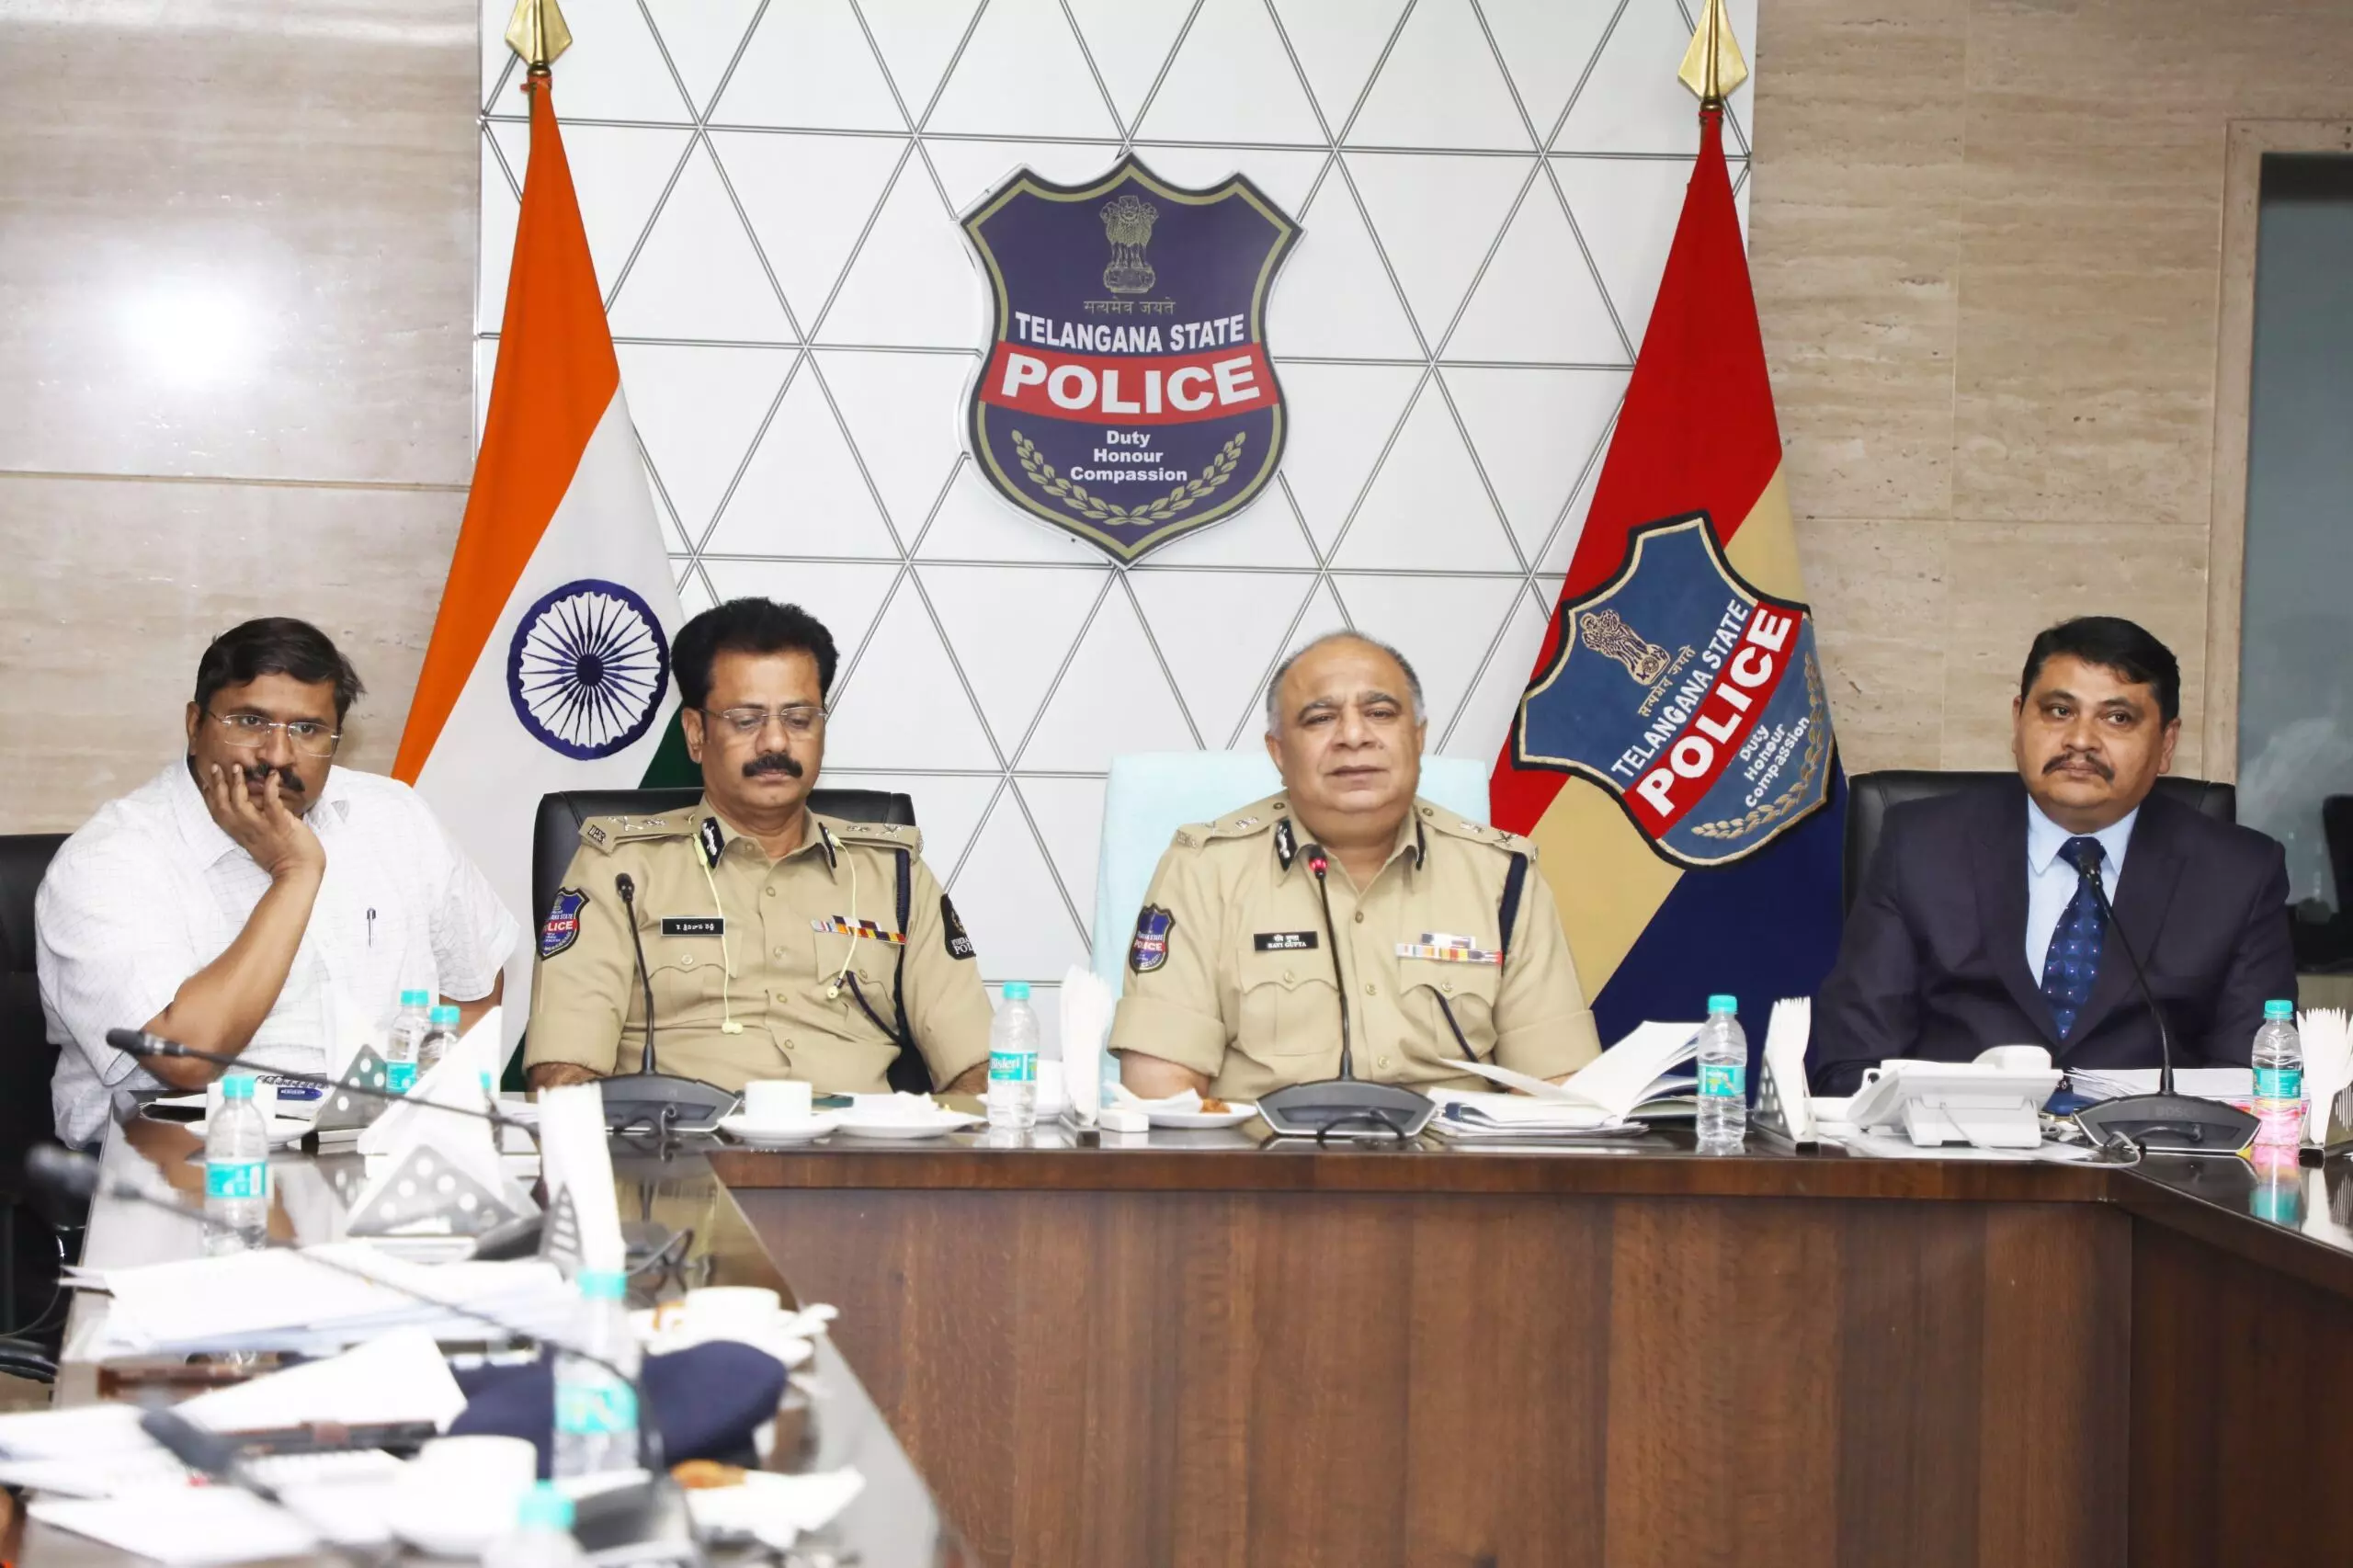 Telangana police to conduct Road Safety Month: DGP Ravi Gupta